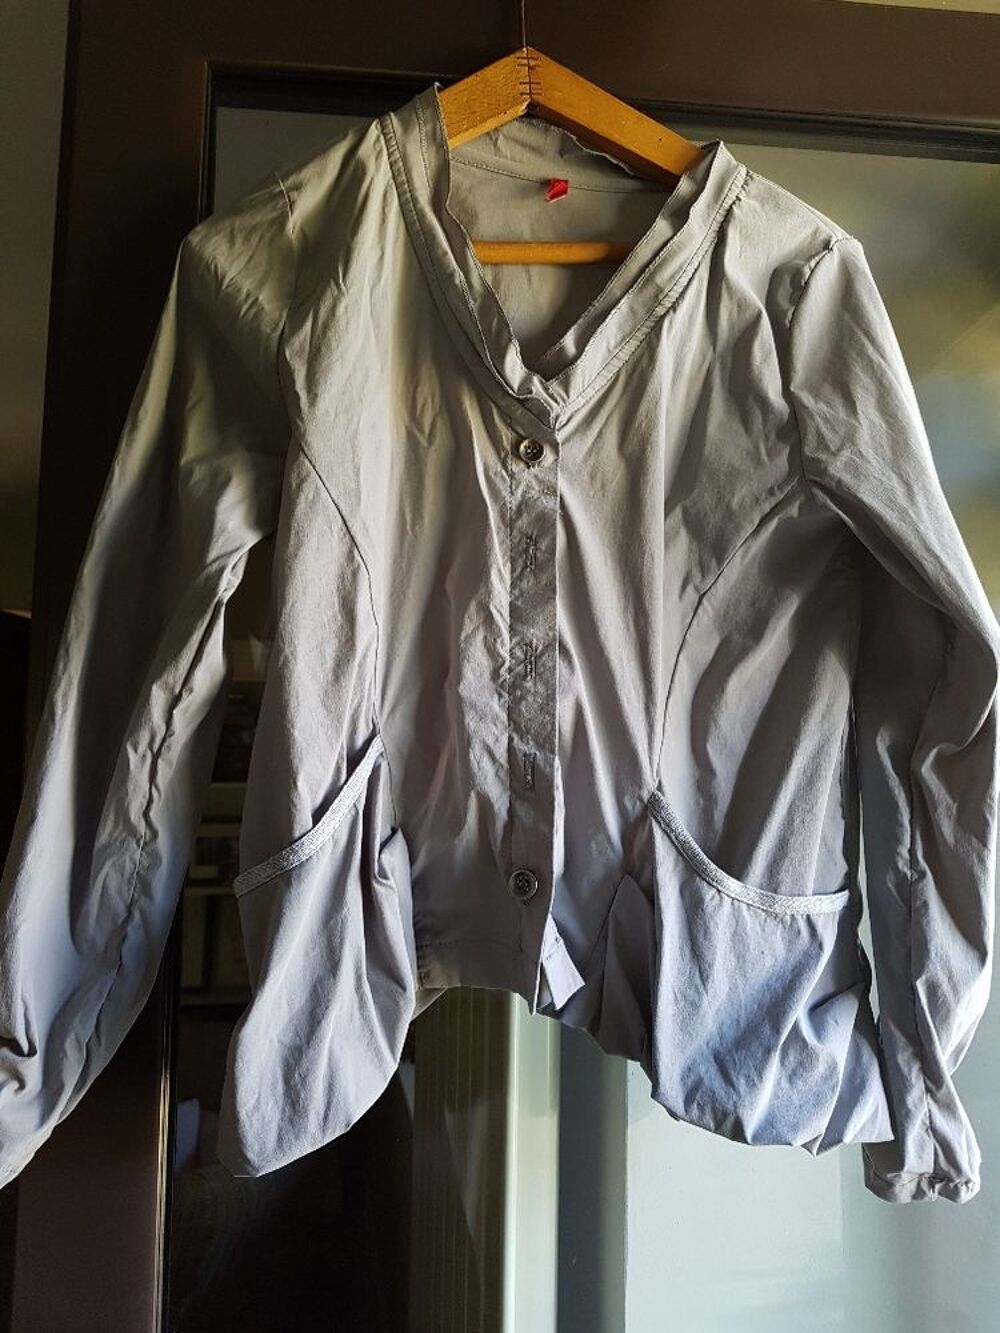 Top/veste gris(e) vintage de bonne qualit&eacute;
Vtements